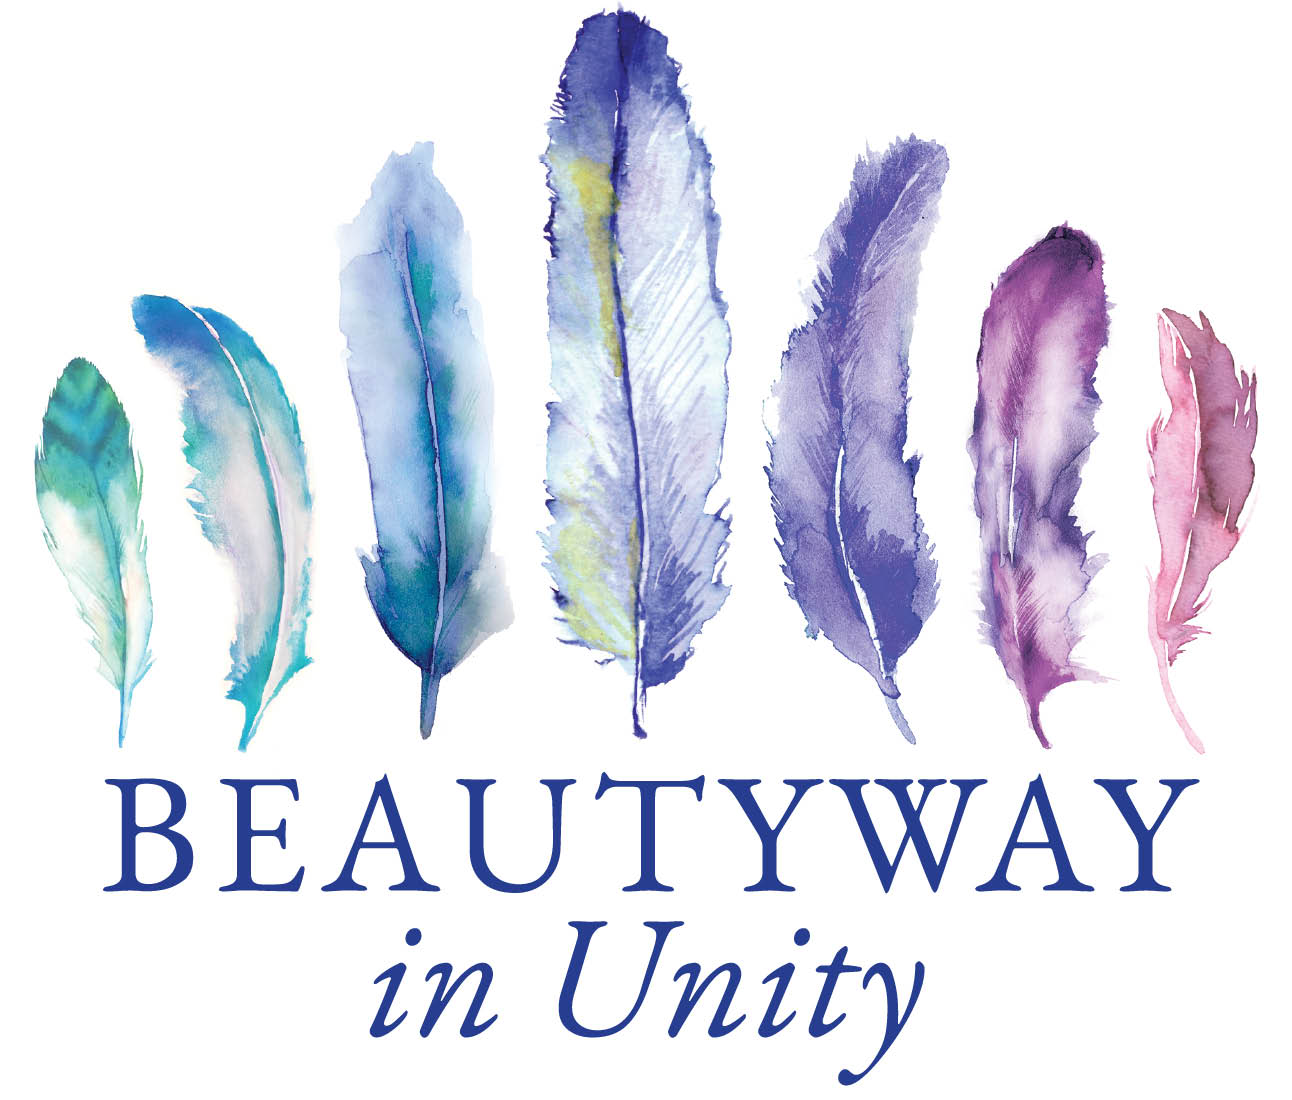 Beautyway In Unity